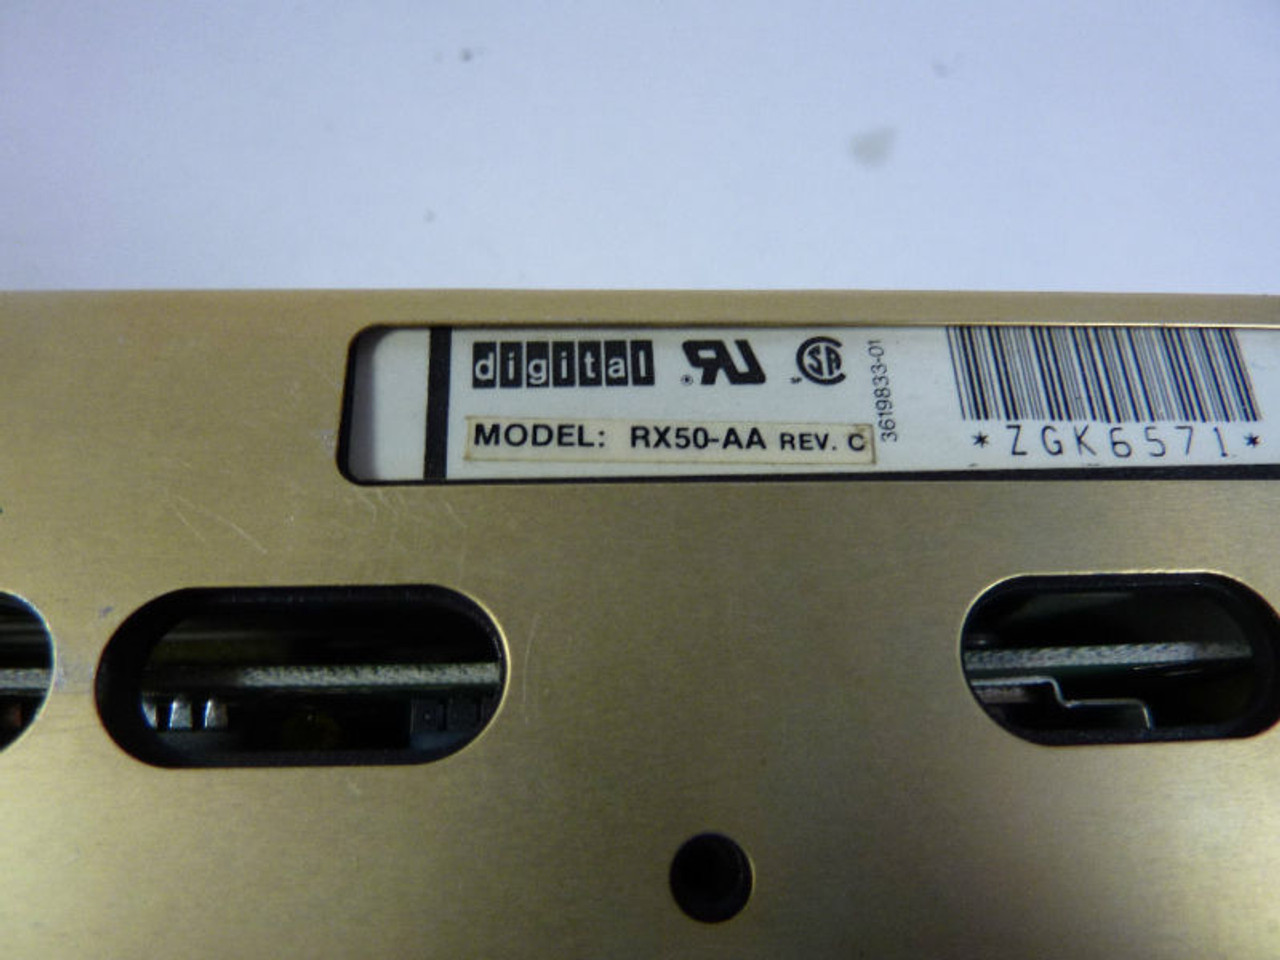 Digital RX50-AA 5.25 USED